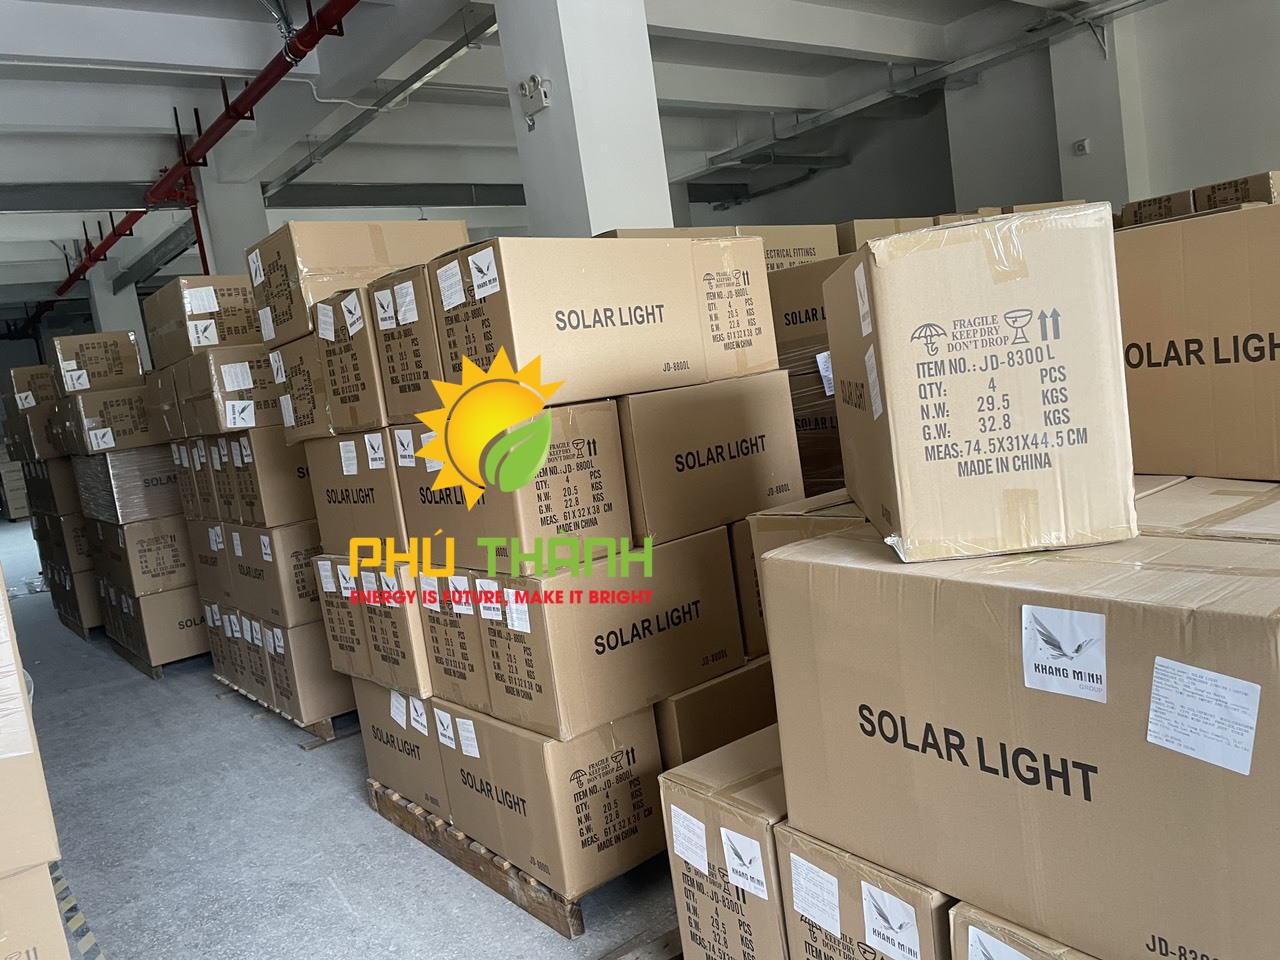 Đèn năng lượng mặt trời Jindian JD - 8500 L công suất 500W - Hàng chính hãng